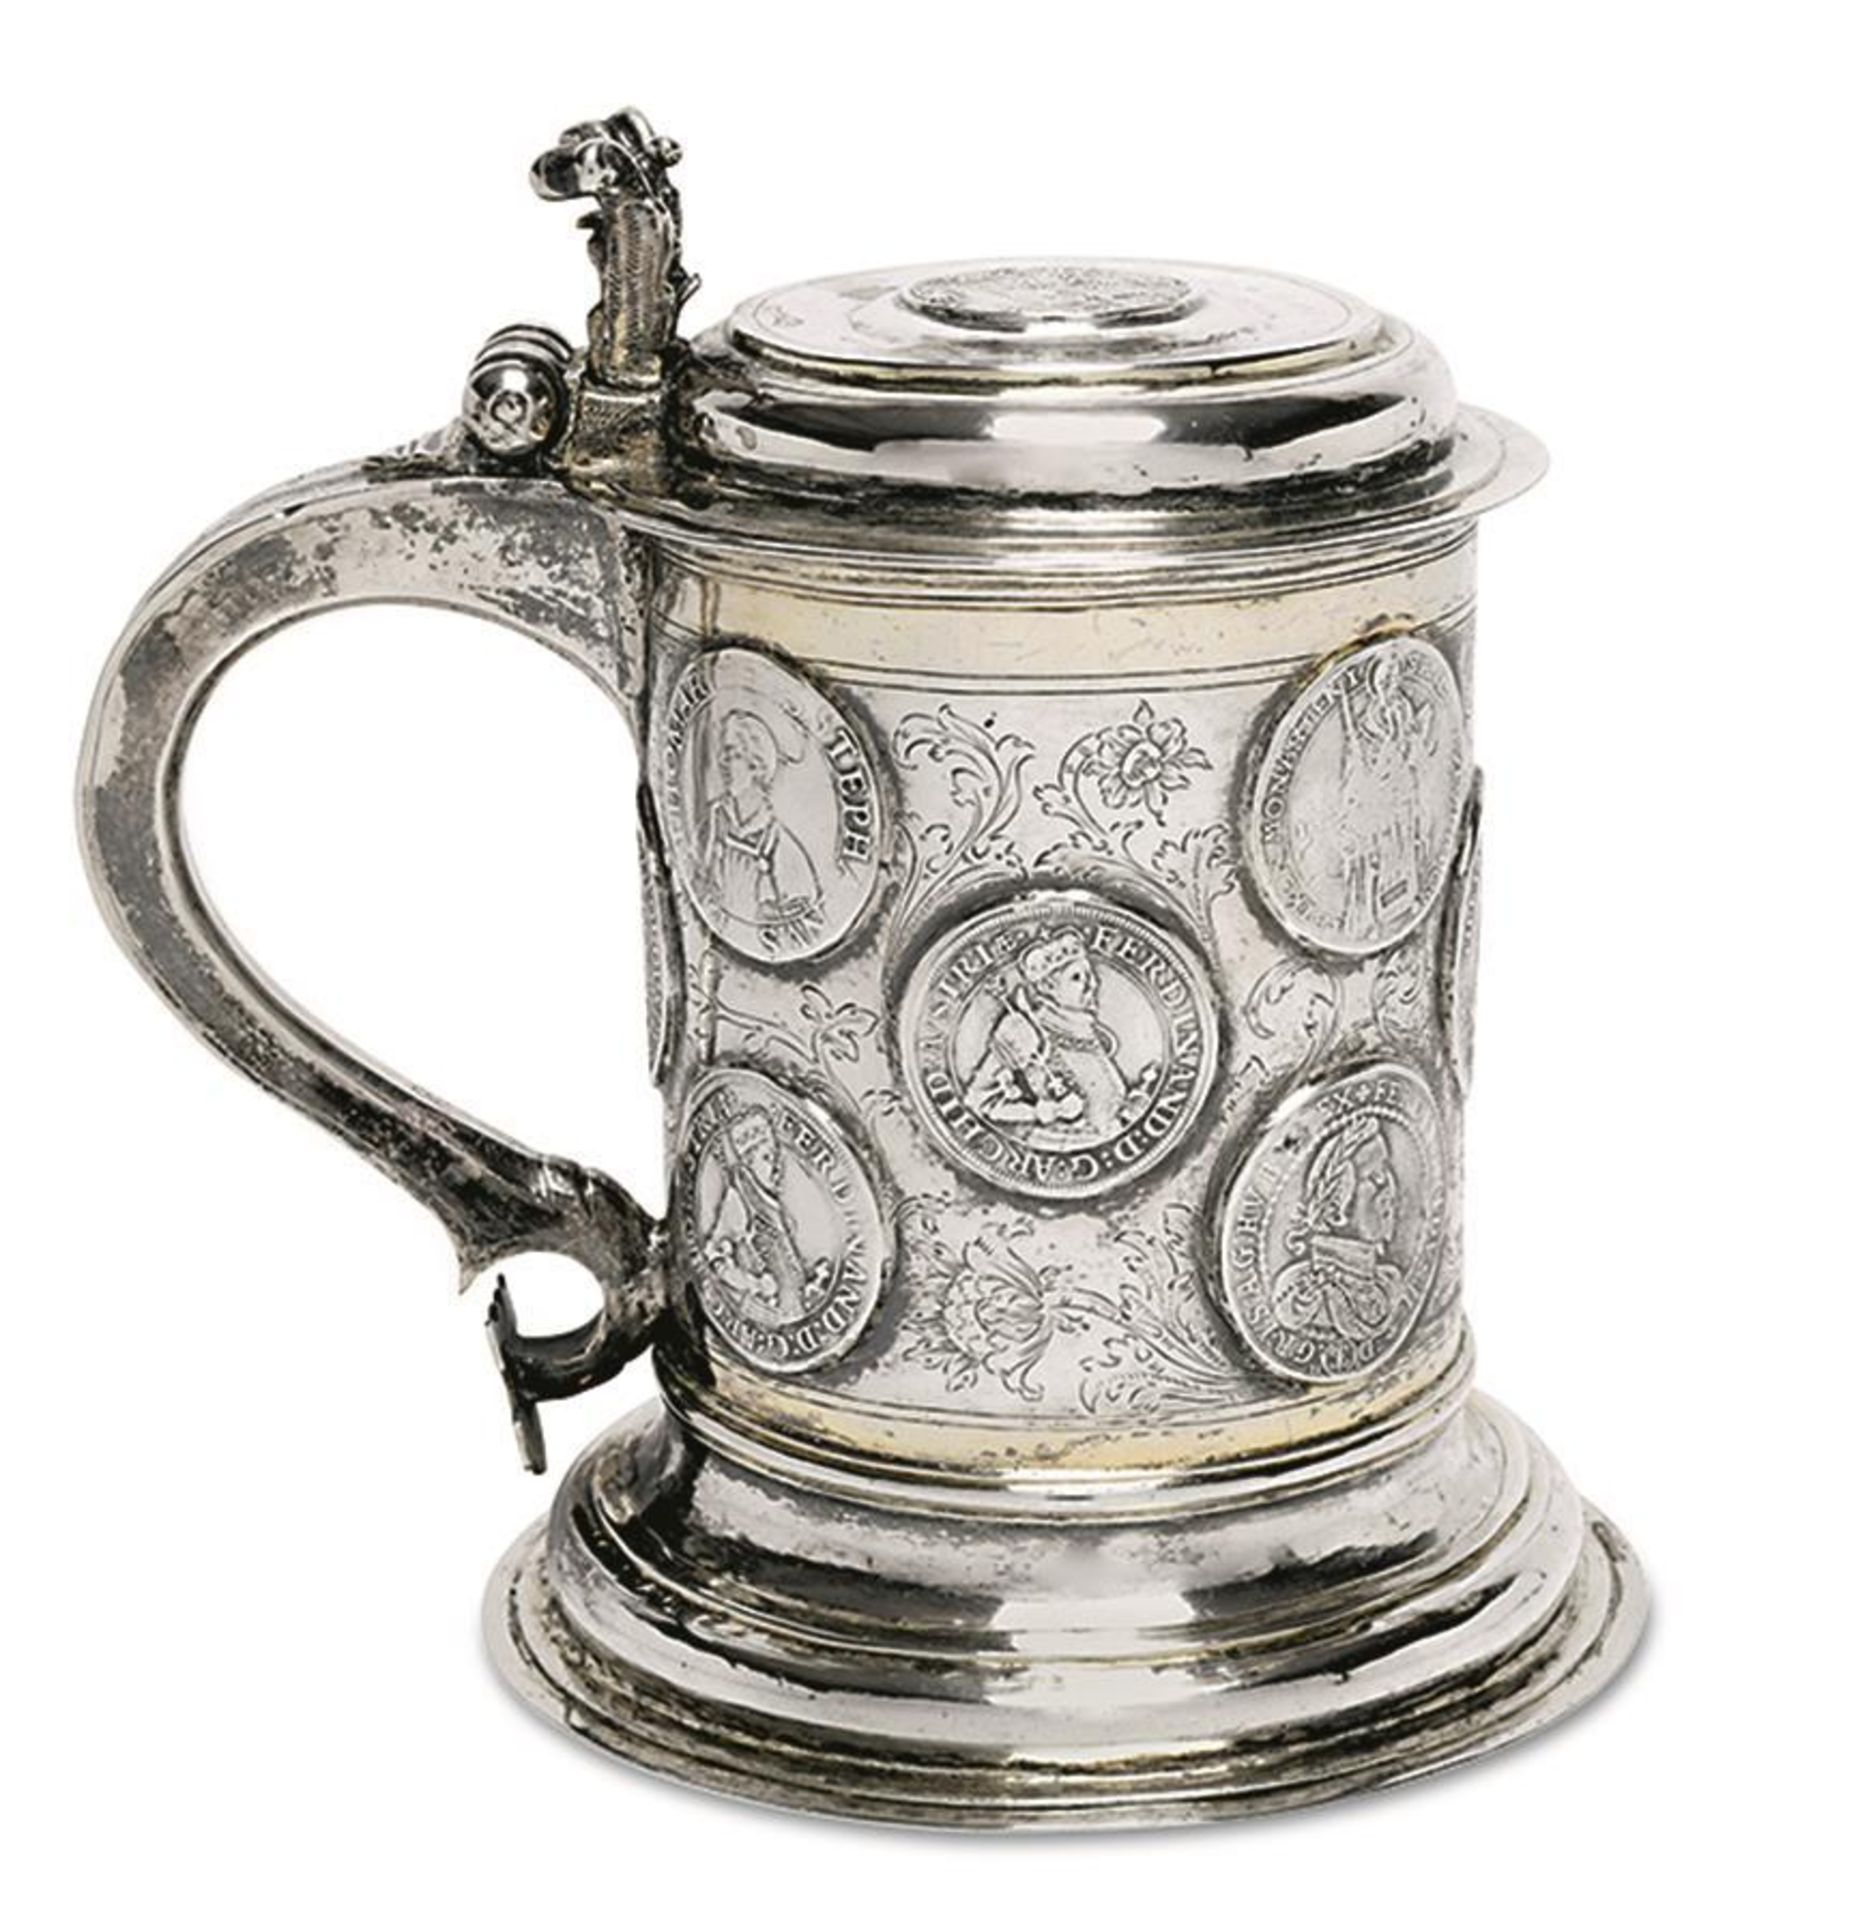 Münzdeckelhumpen. Tilsit, um 1700 | Silber, tlw. vergoldet. - Image 2 of 3